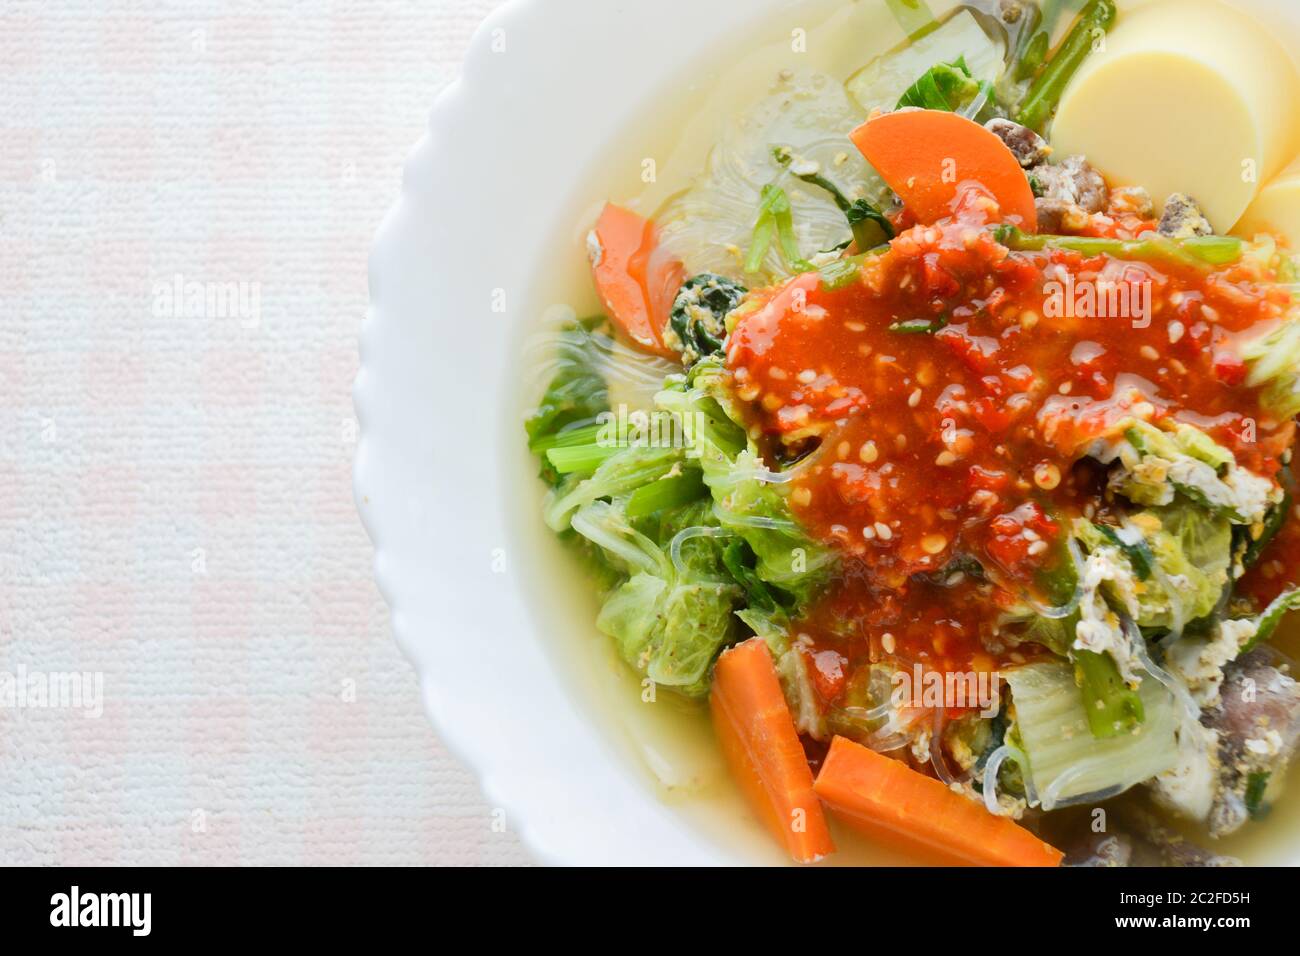 Dégustez un repas avec Sukiyaki, c'est un aliment sain de style japonais. Banque D'Images